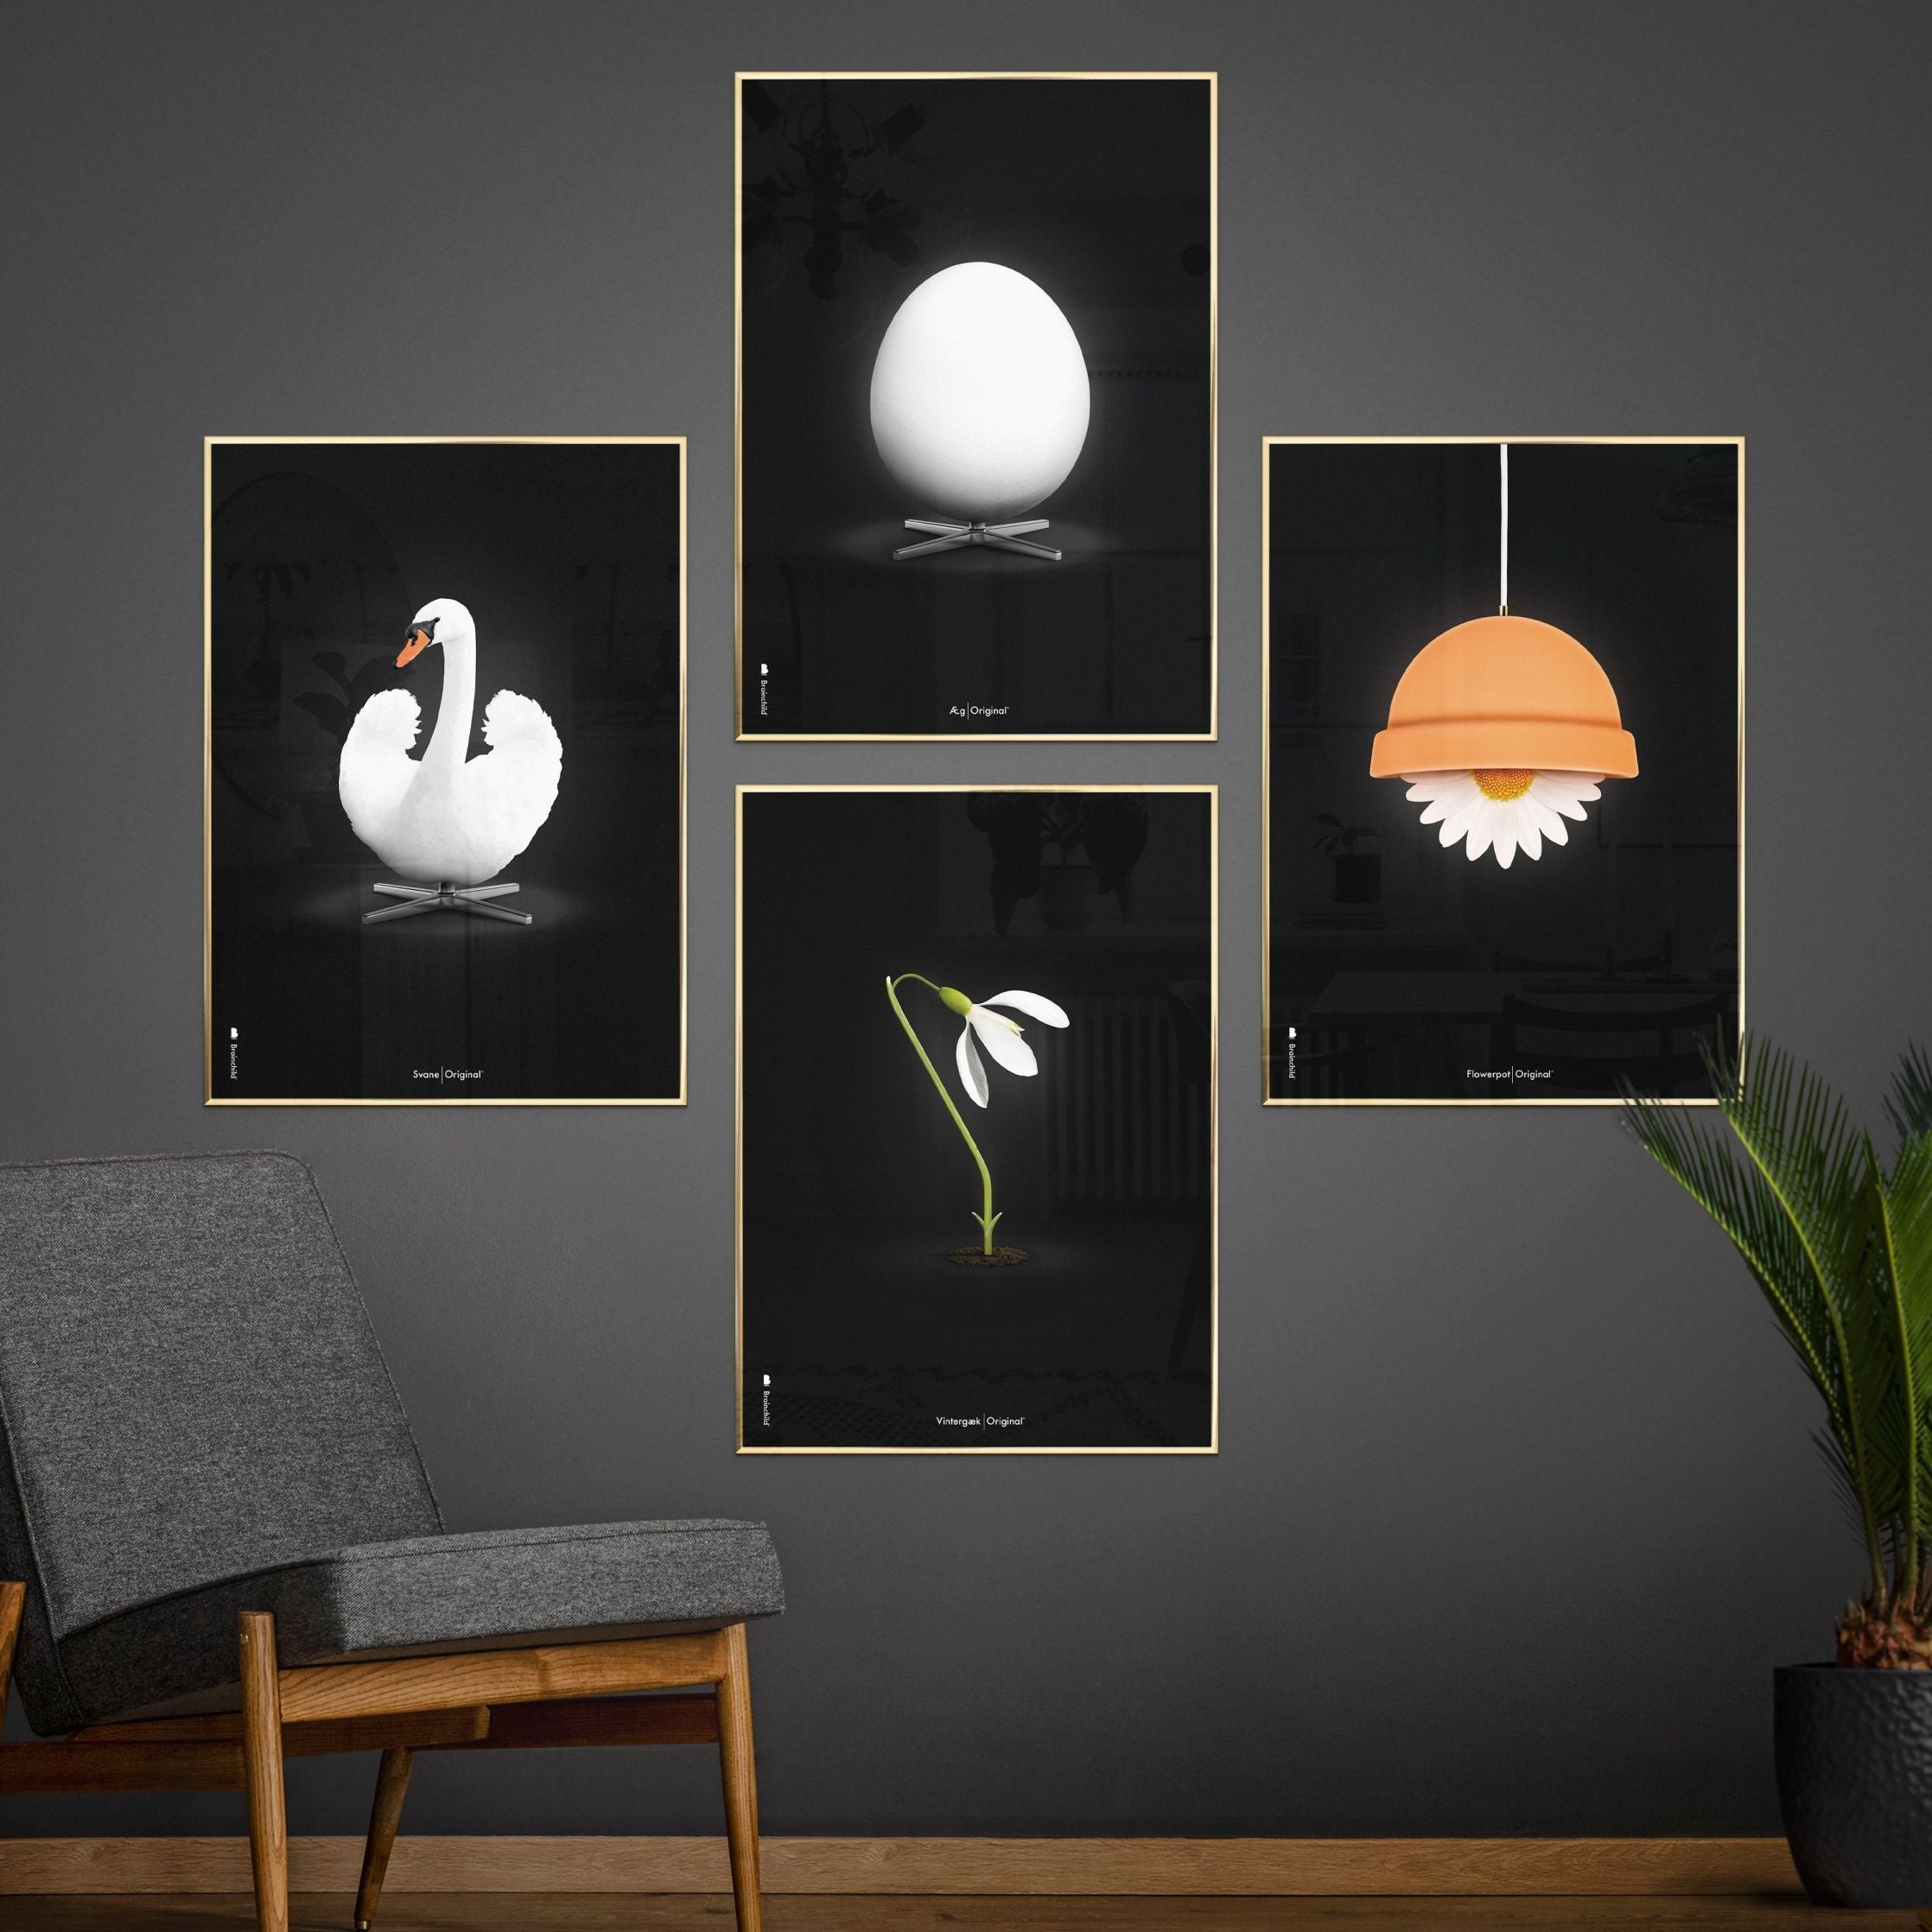 Poster classico di SnowDrop Brainchild, cornice in legno chiaro 70x100 cm, sfondo nero